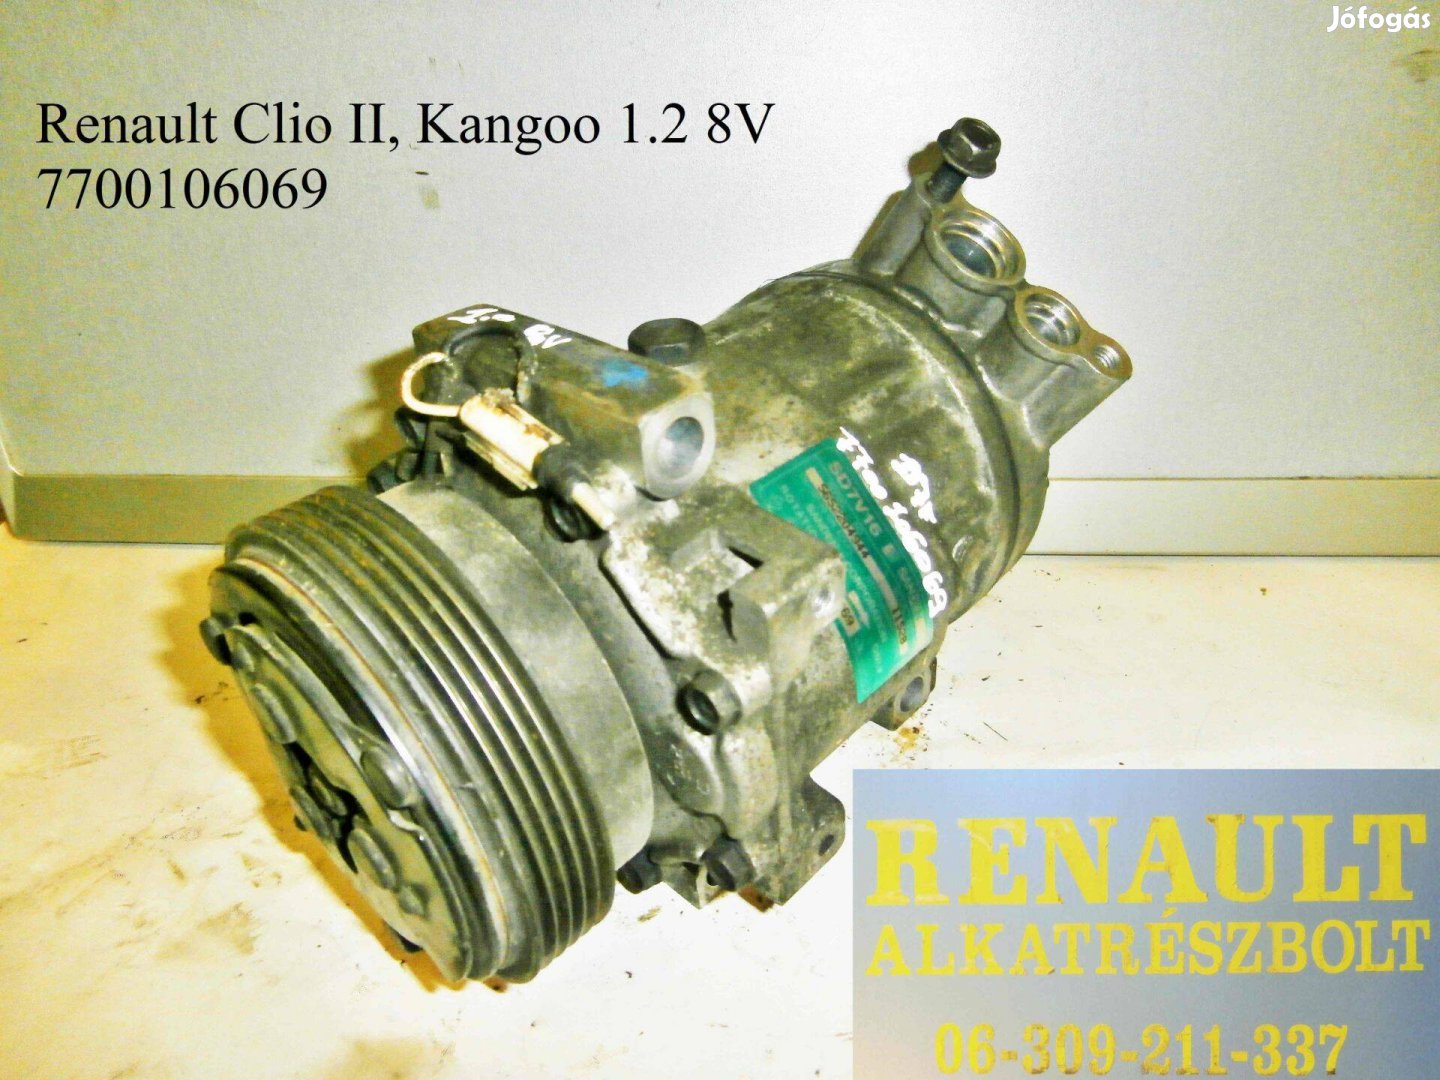 Renault Clio II, Kangoo 1.2 8V 7700106069 klímakompresszor